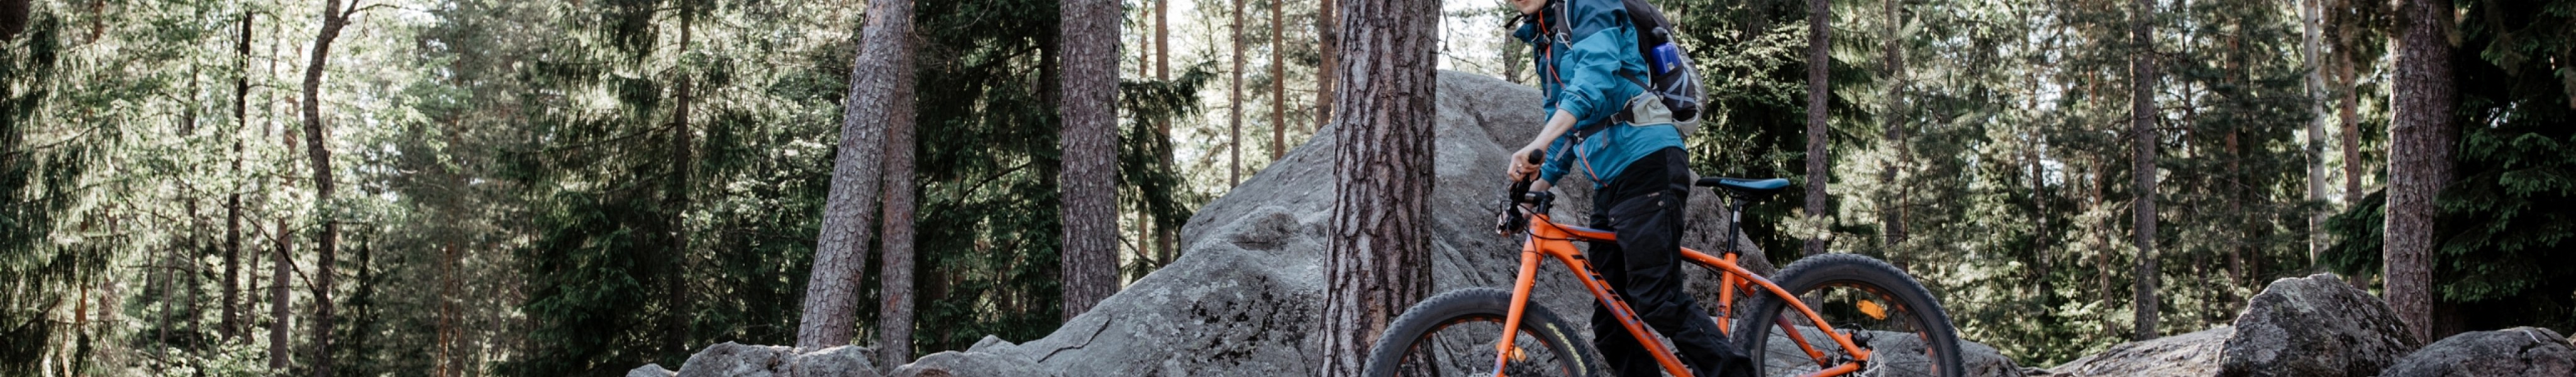 Mies pyöräilemässä metsässä maastopyörällä.